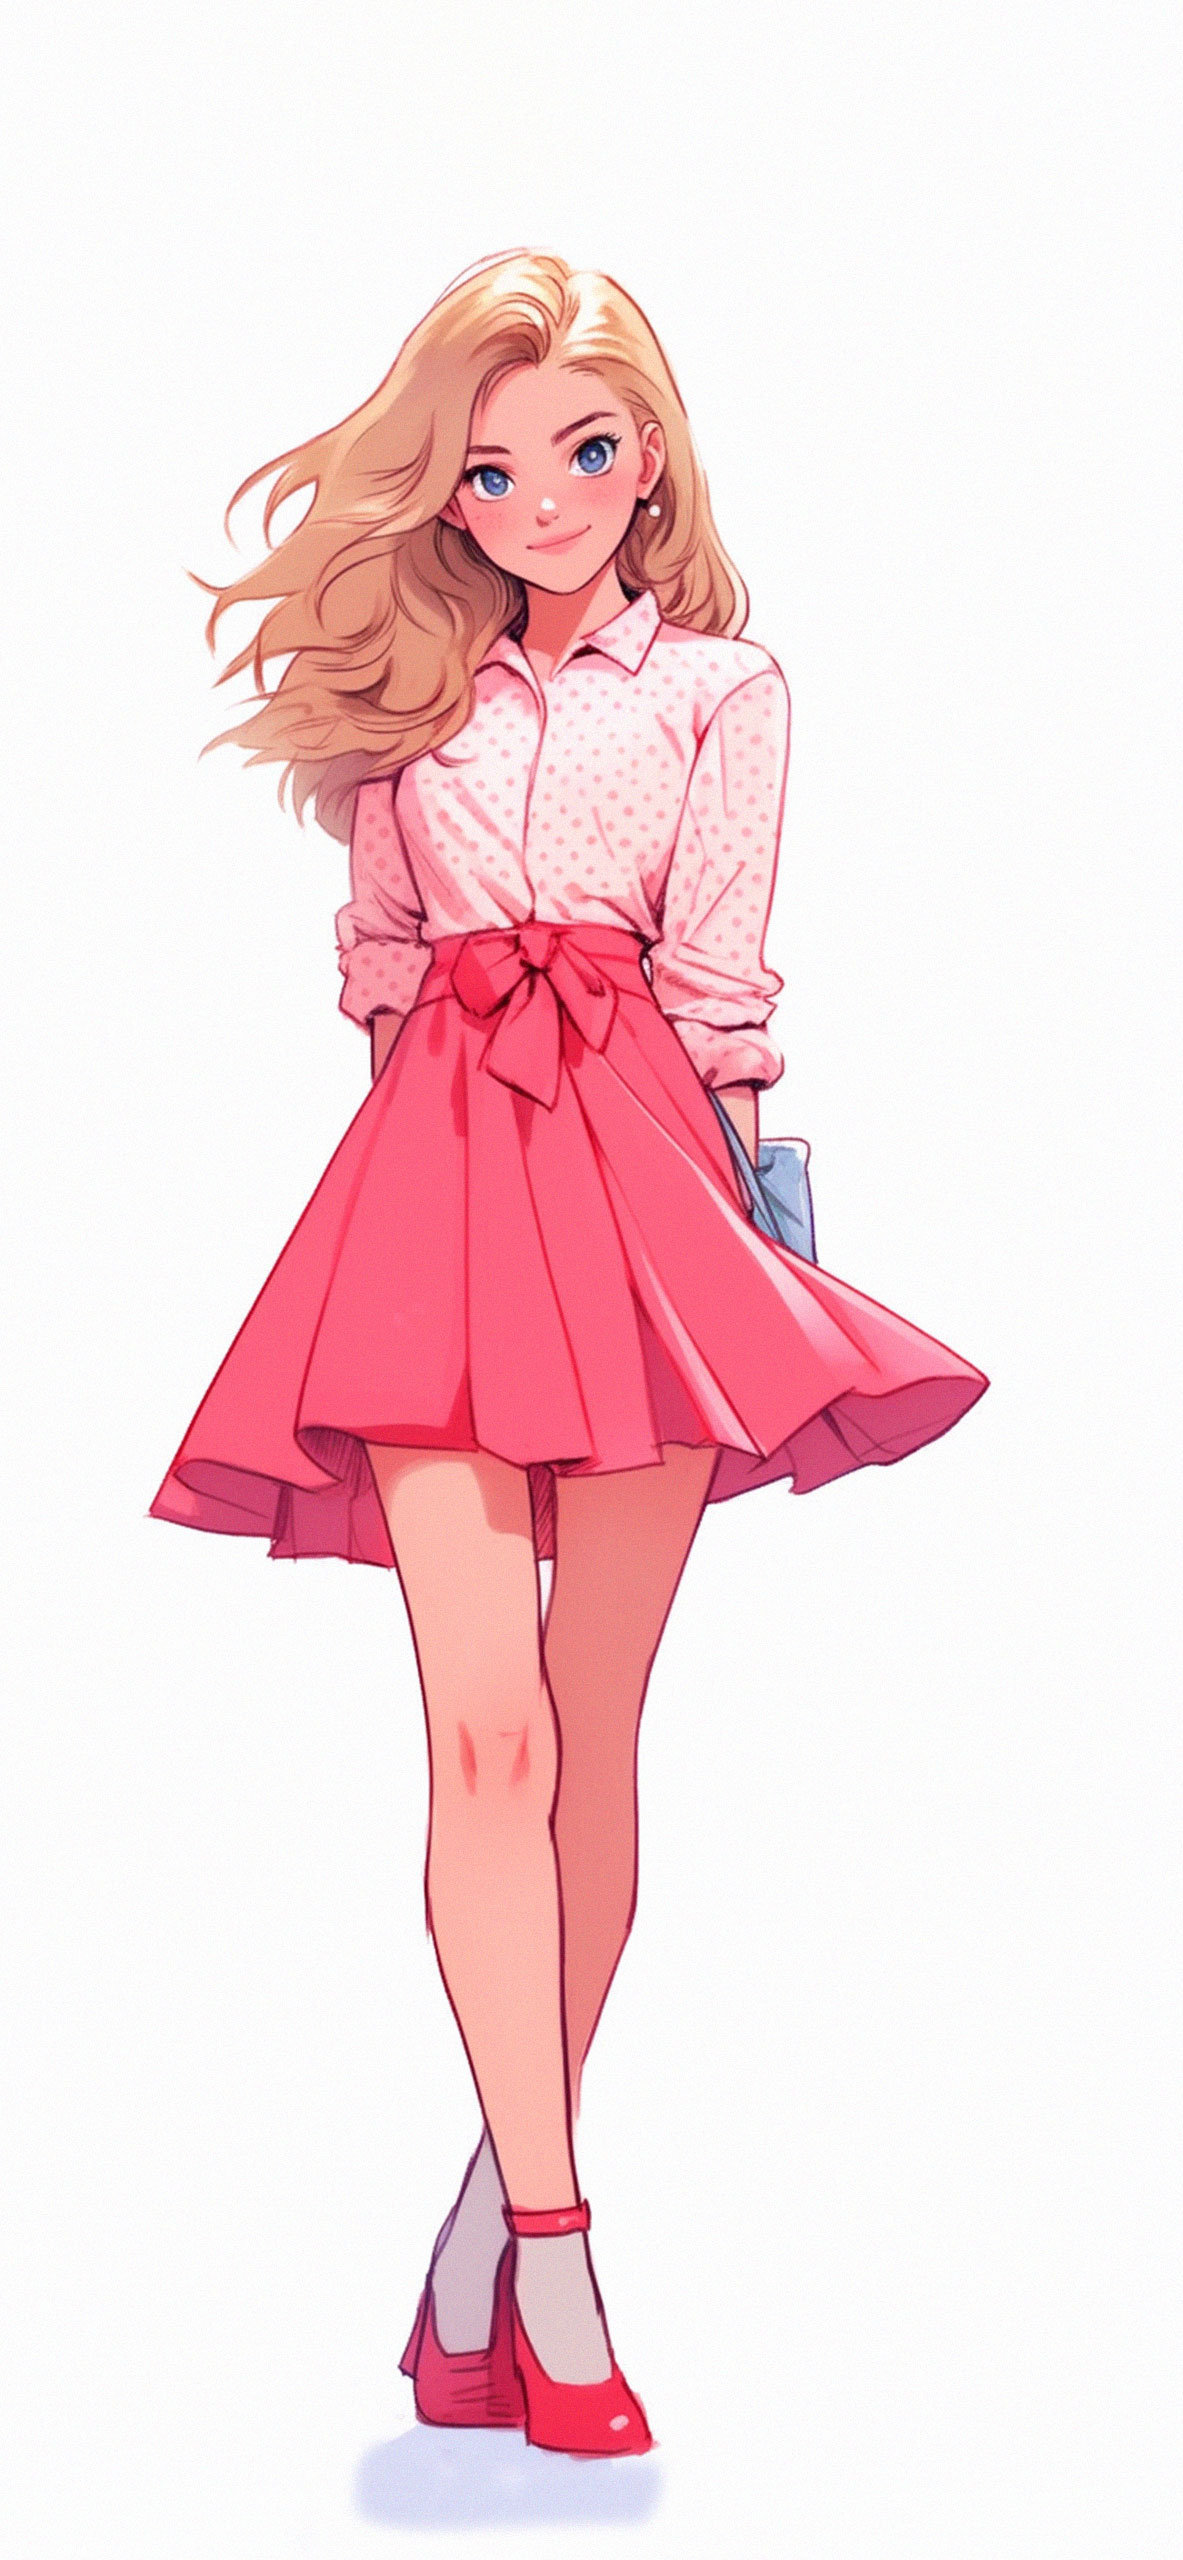 Girl Looksweater IPhone IPhone : IPhone In 2021. Girl Iphone Wallpa. Girl  Iphone , Digital Art Girl, Digital Art Anime, Semi Realistic HD phone  wallpaper | Pxfuel